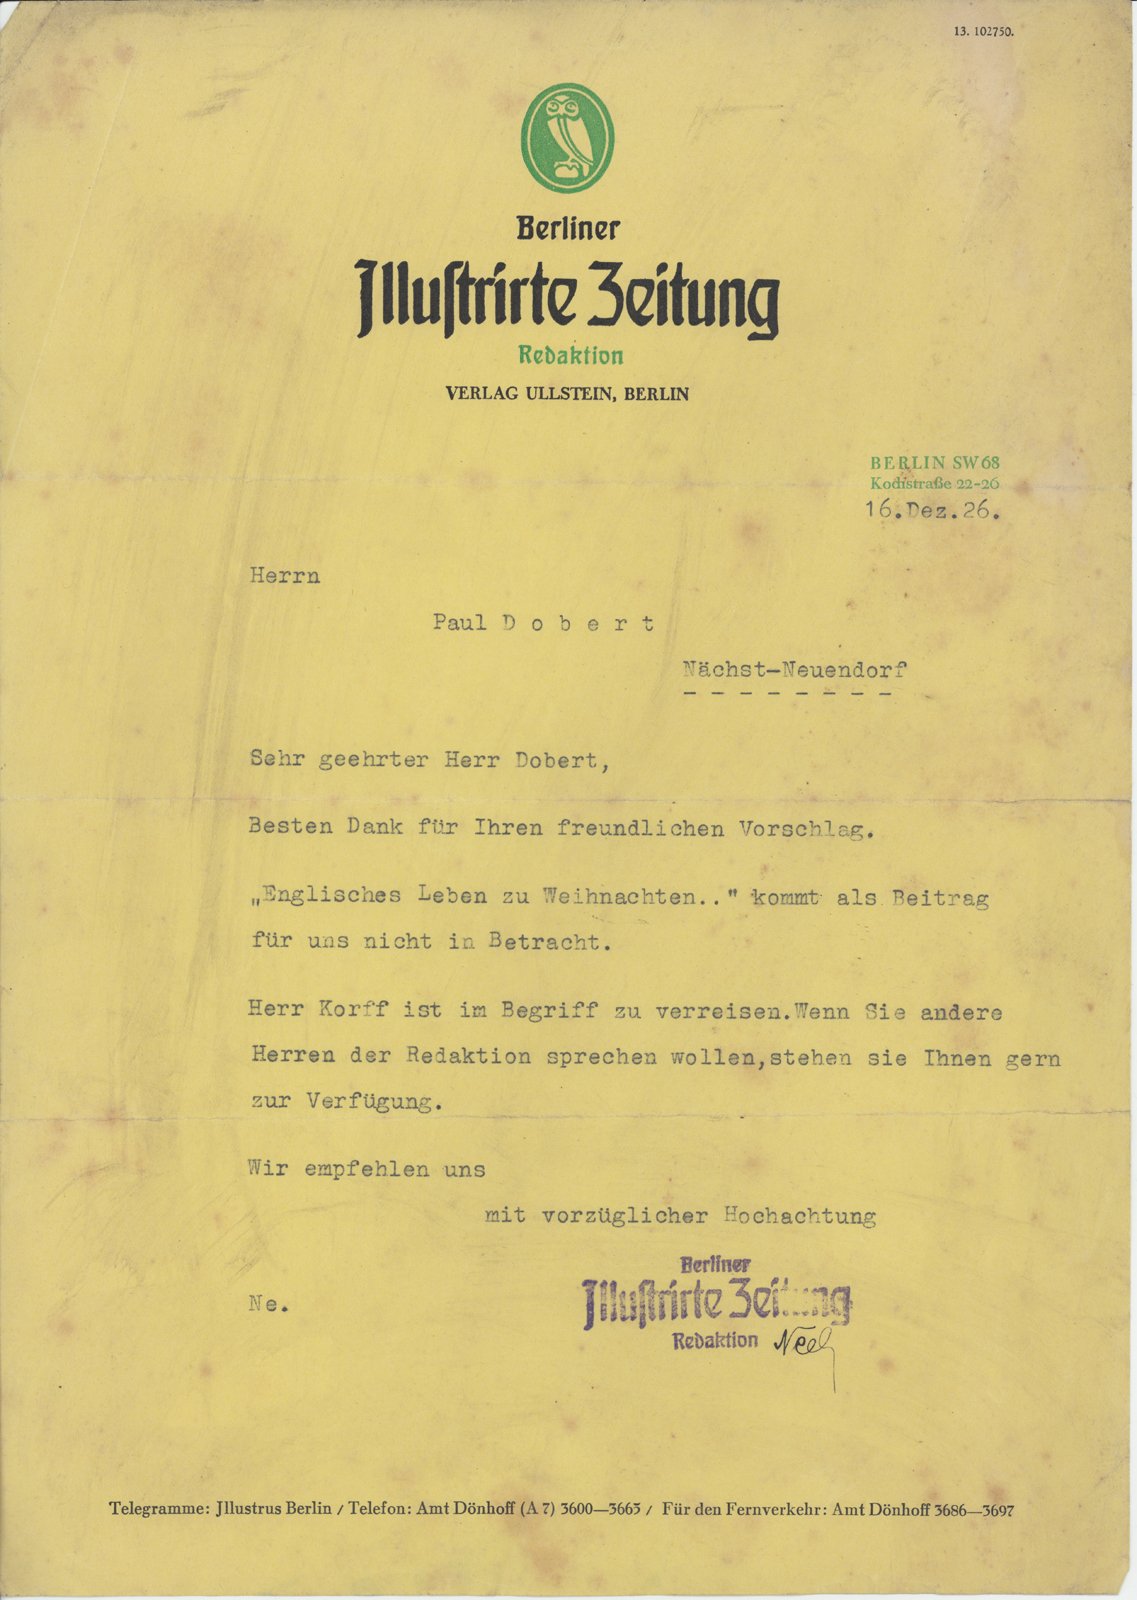 Illustriete Zeitung an Dobert, 16.12.1928 (Heimatverein "Alter Krug" Zossen e.V. CC BY-NC-SA)